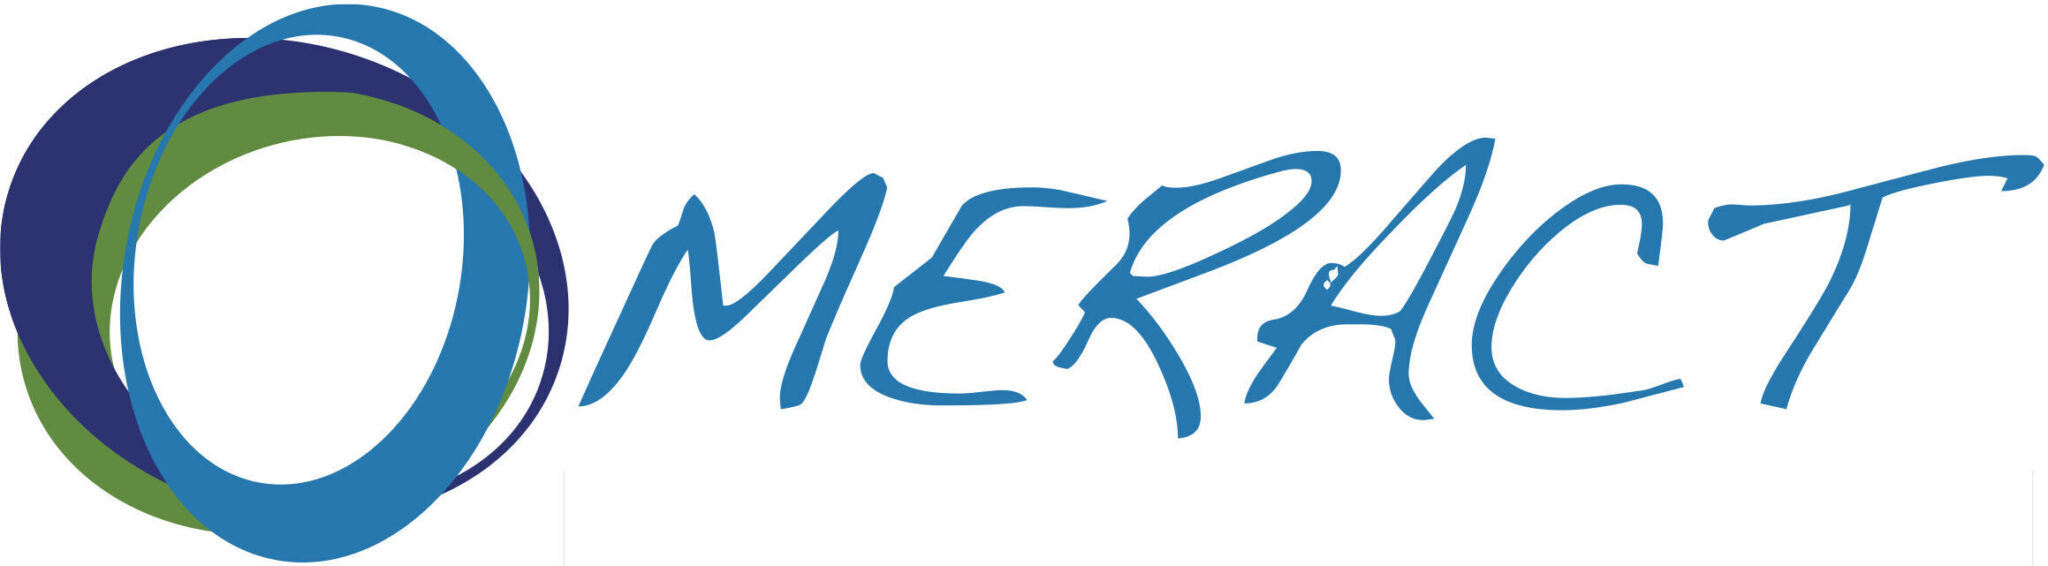 Omeract logo